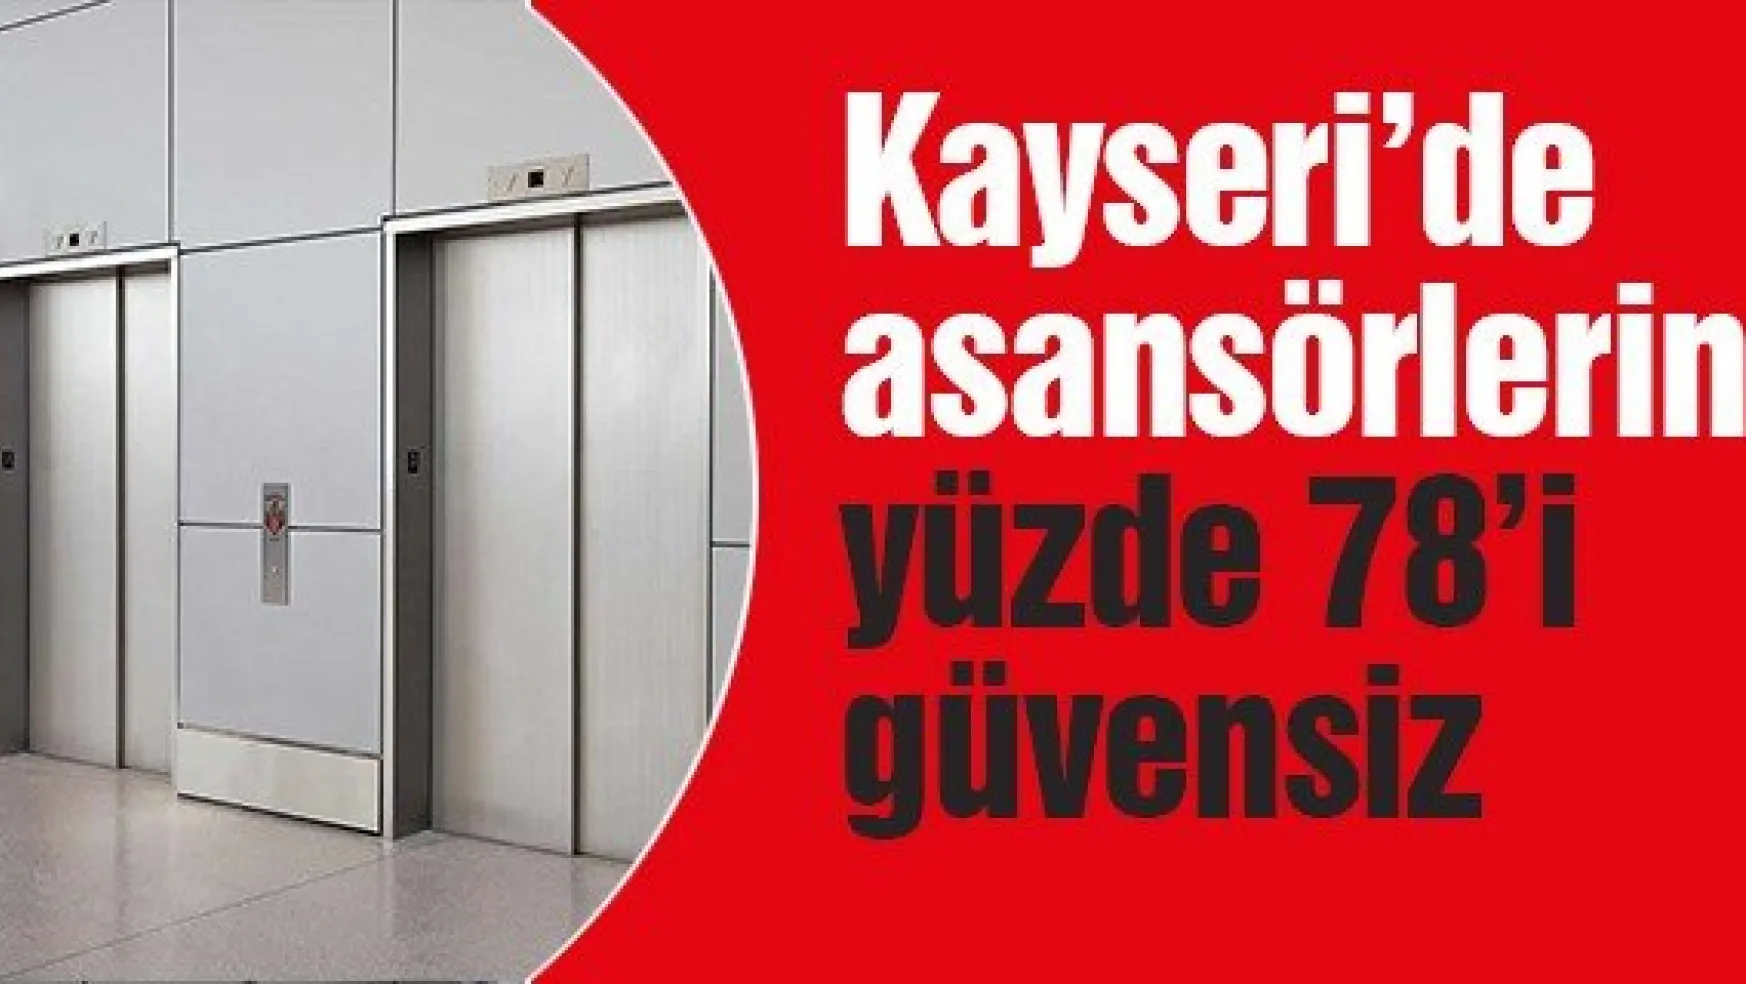 Kayseri'de asansörlerin yüzde 78'i güvensiz